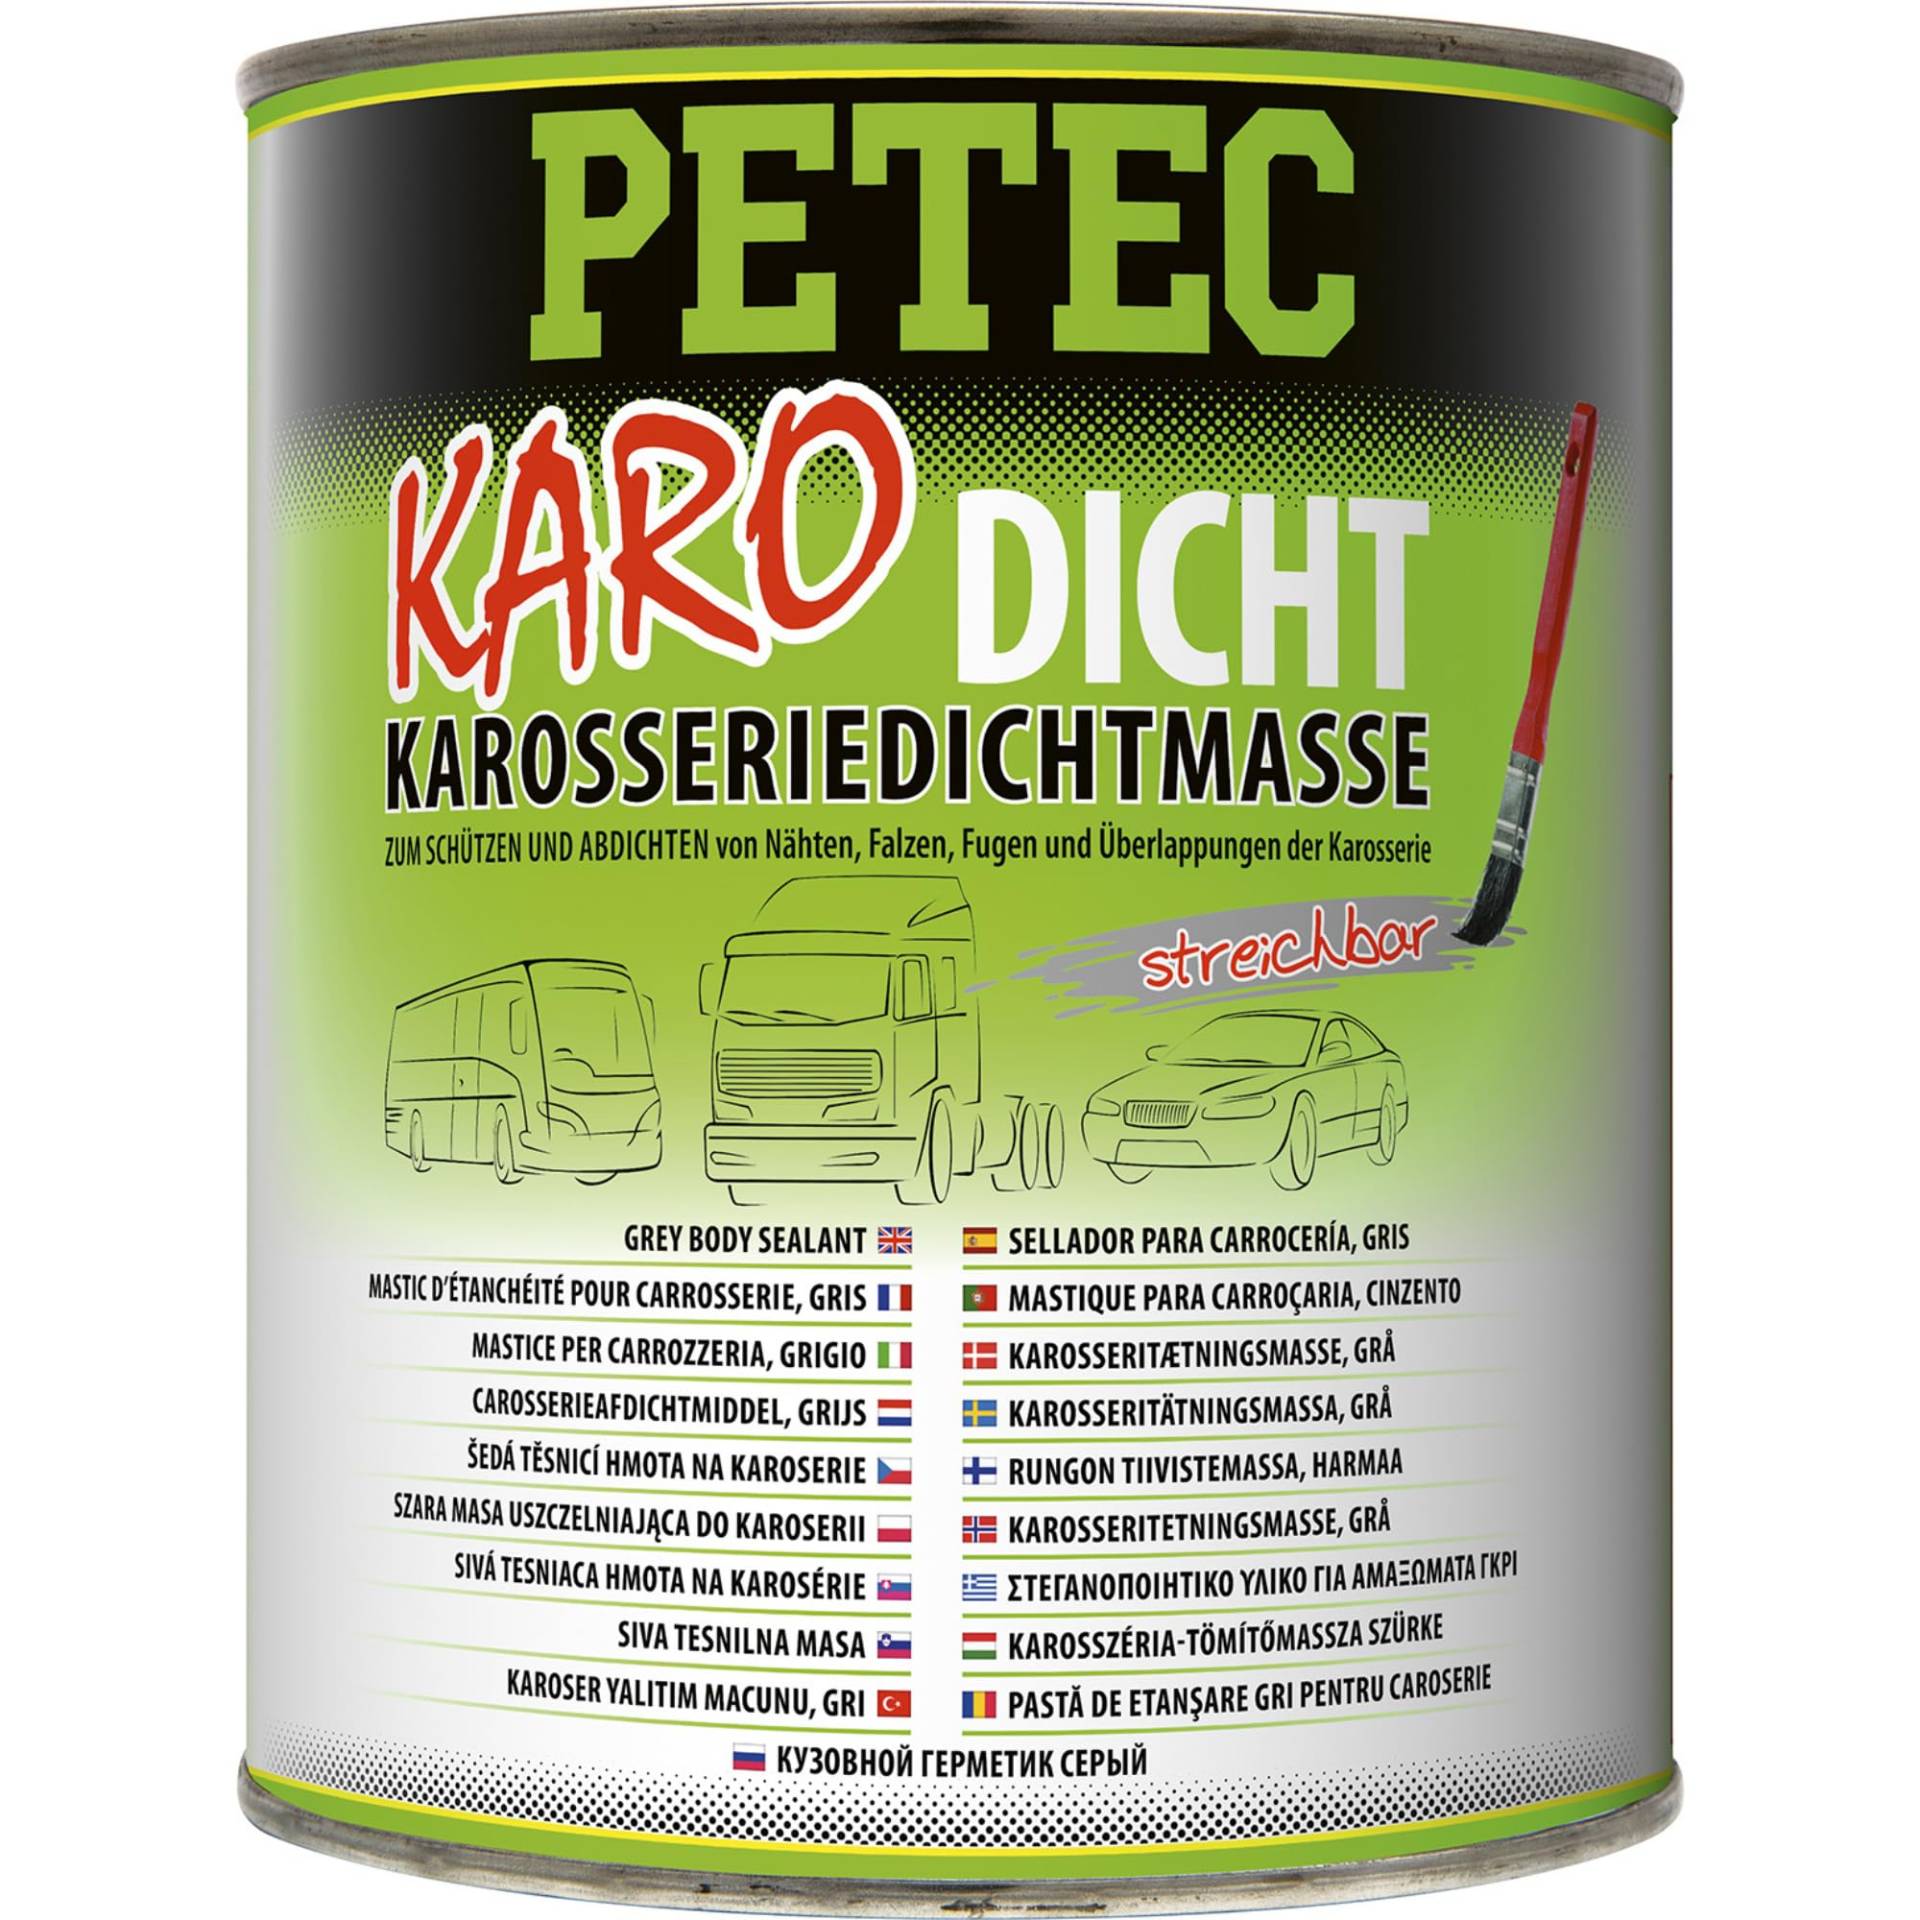 PETEC Karo-Dicht Karosseriedichtmasse grau 1000 g Dose, Karosserie Dichtmasse überlackierbar, streichbar, Pinseldose 94130 von PETEC